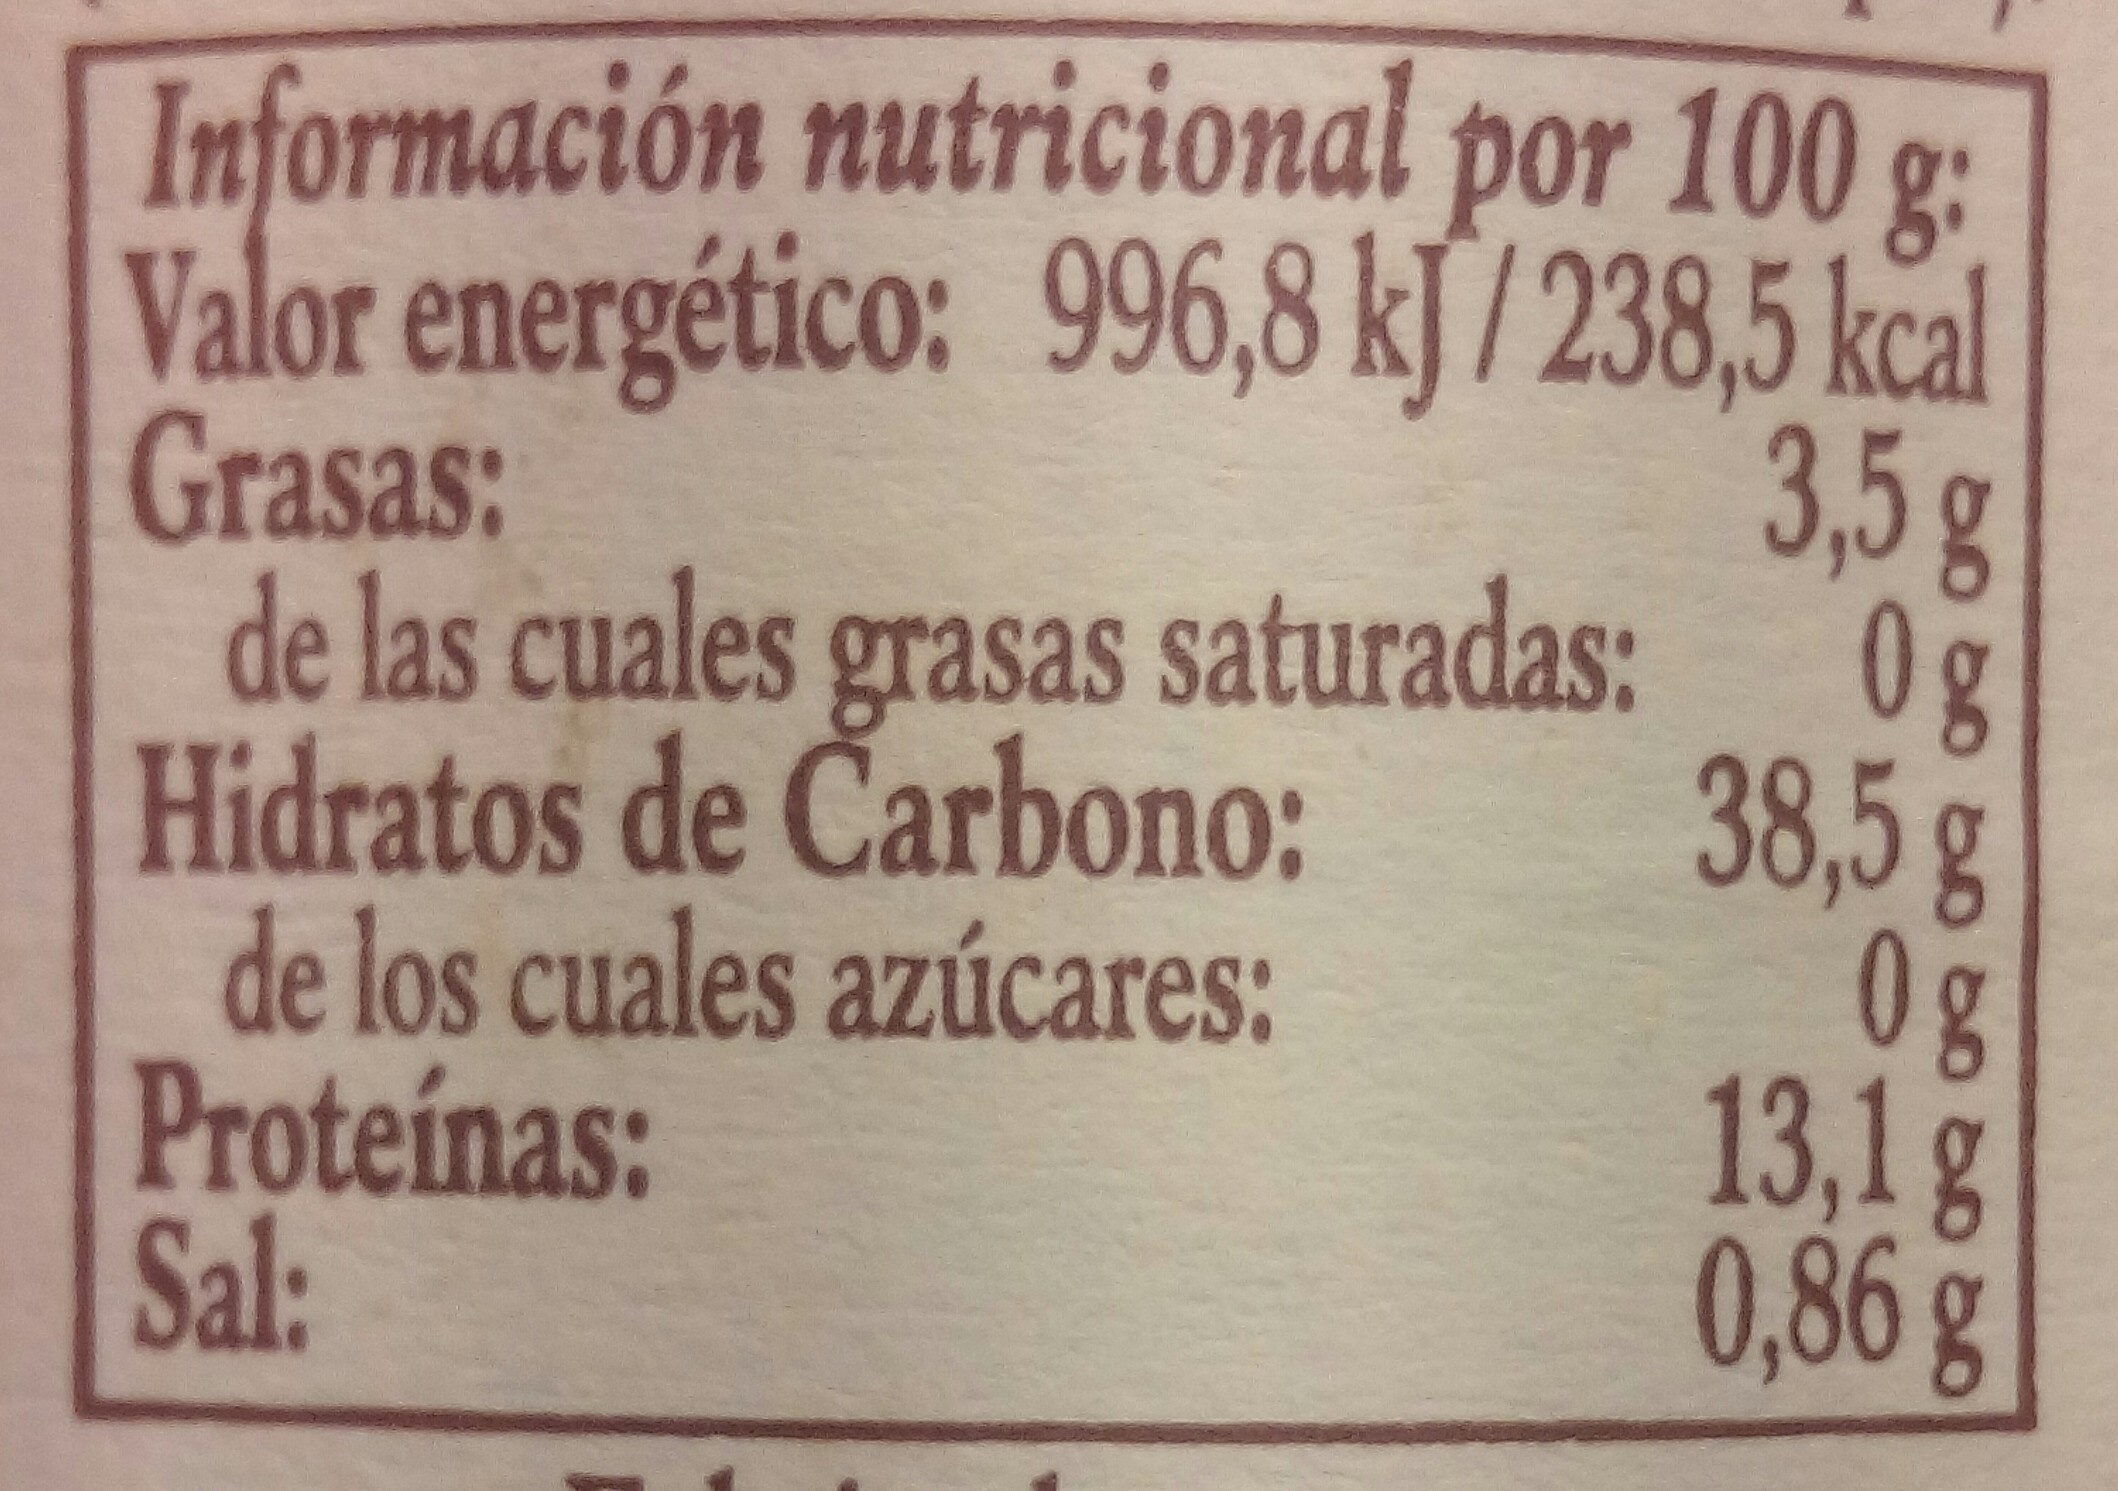 Garbanzanos al natural extra - Nutrition facts - es